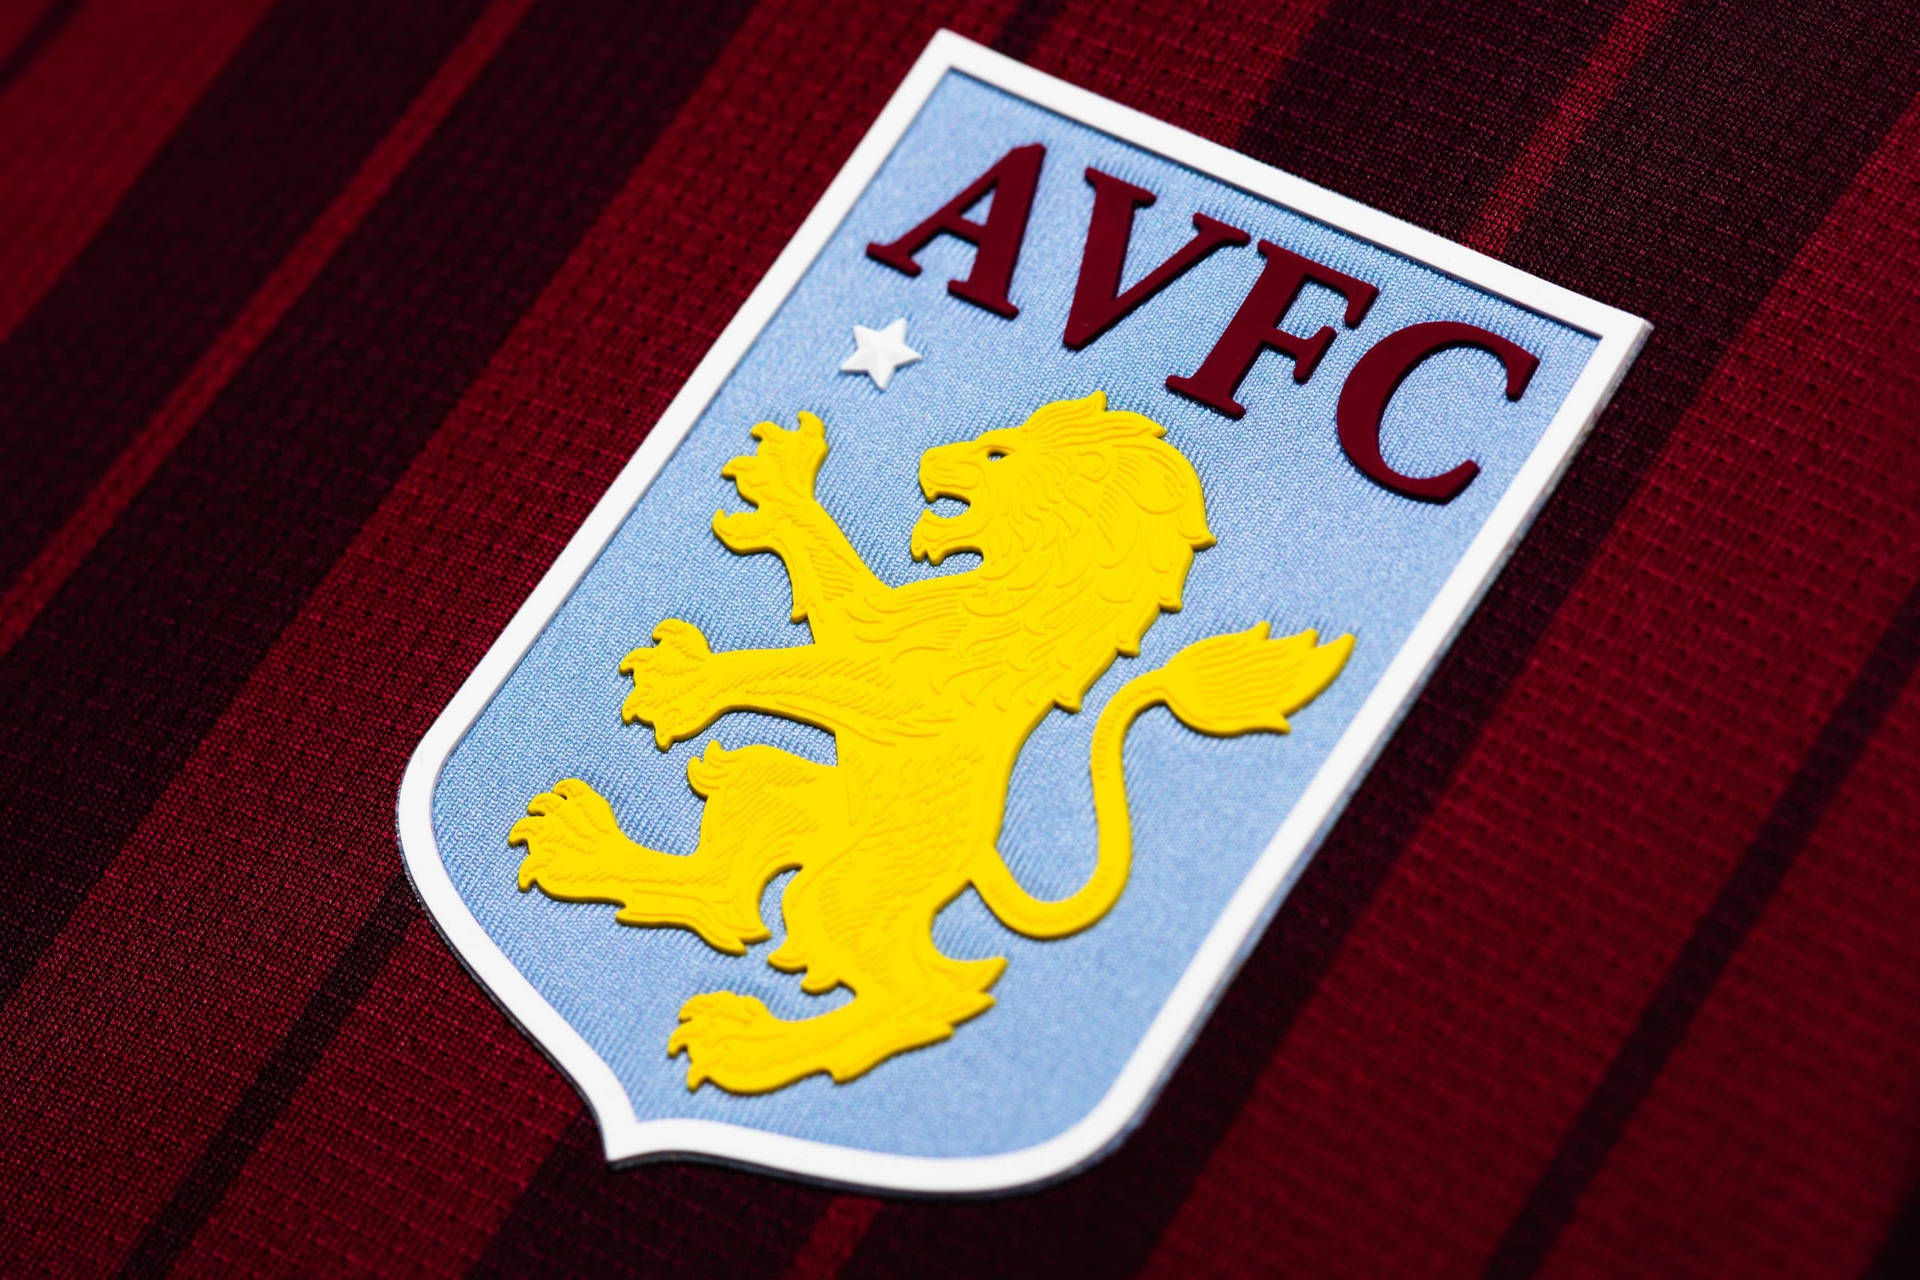 Aston Villa Official Team Kit and Logo Wallpaper